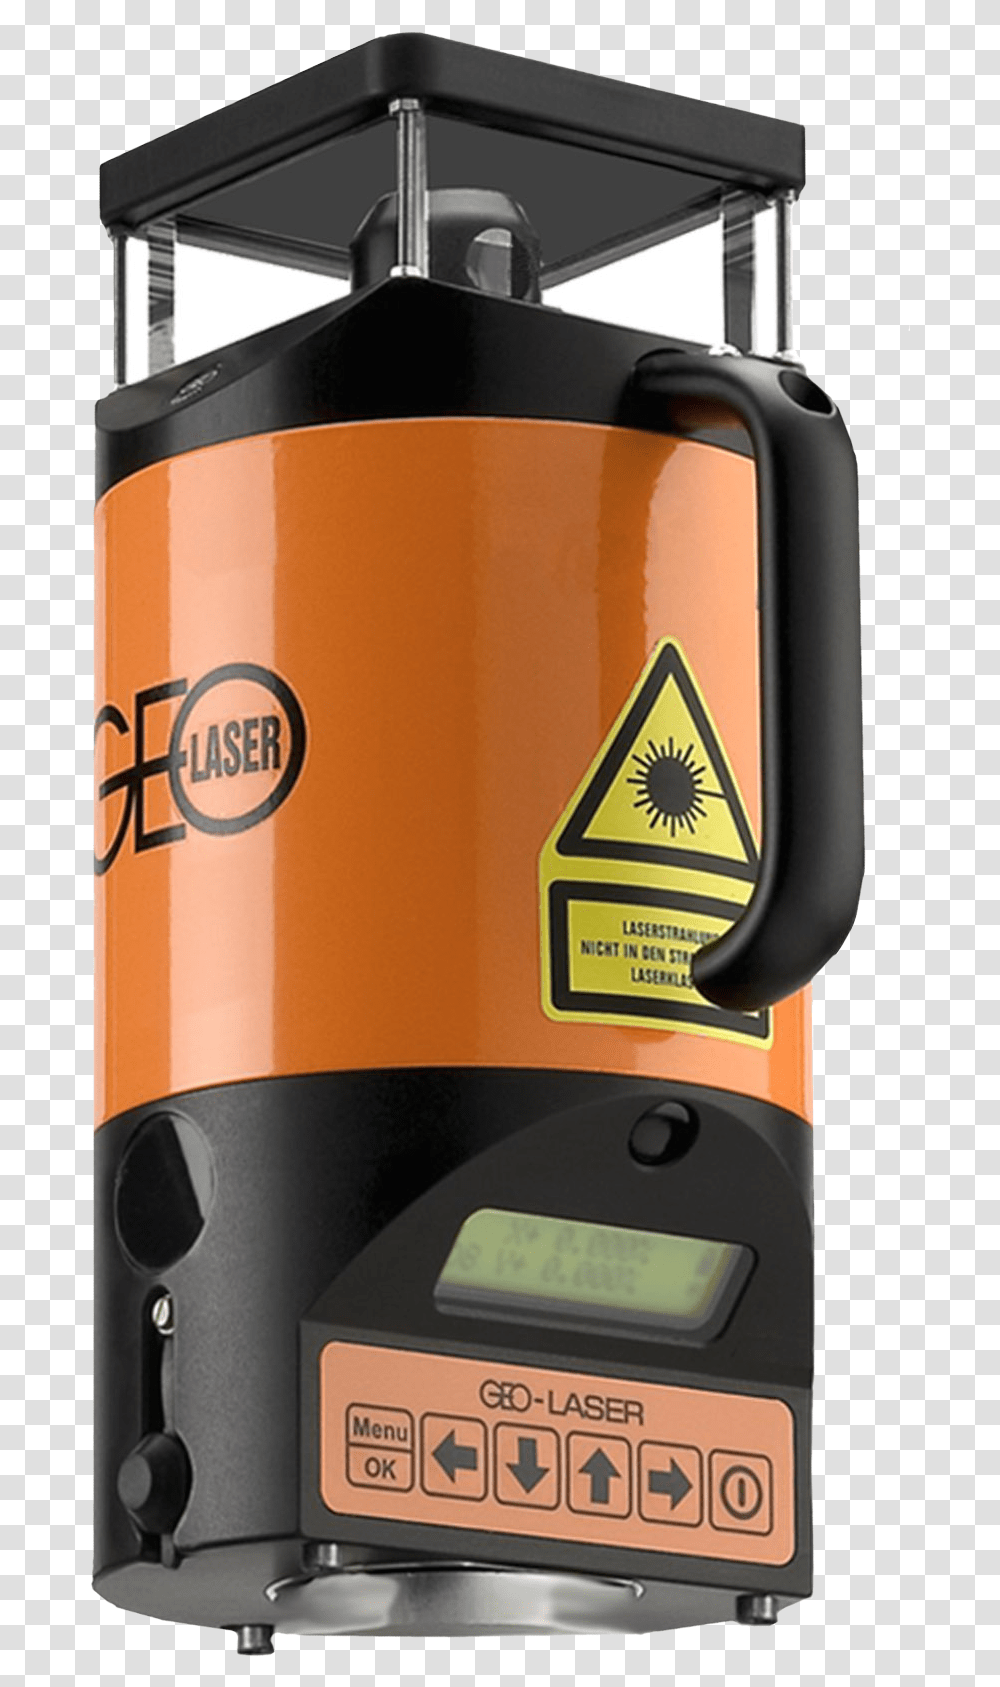 Cone Construction Laser Kb 80l Rotationslaser Rl, Label, Bottle, Alcohol, Beverage Transparent Png